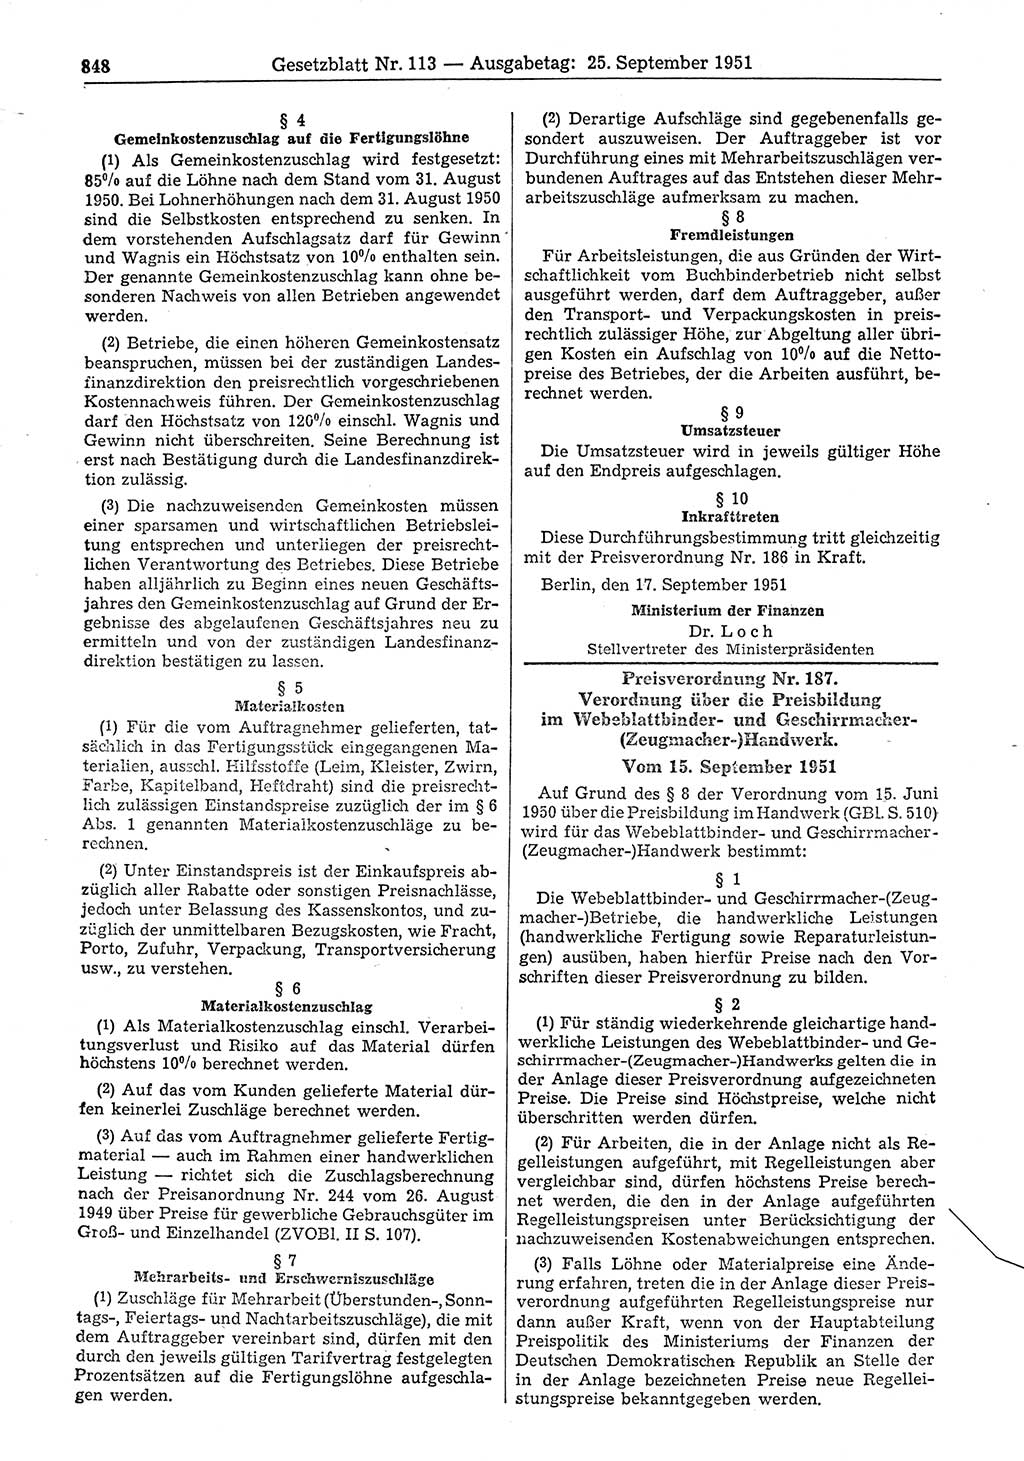 Gesetzblatt (GBl.) der Deutschen Demokratischen Republik (DDR) 1951, Seite 848 (GBl. DDR 1951, S. 848)